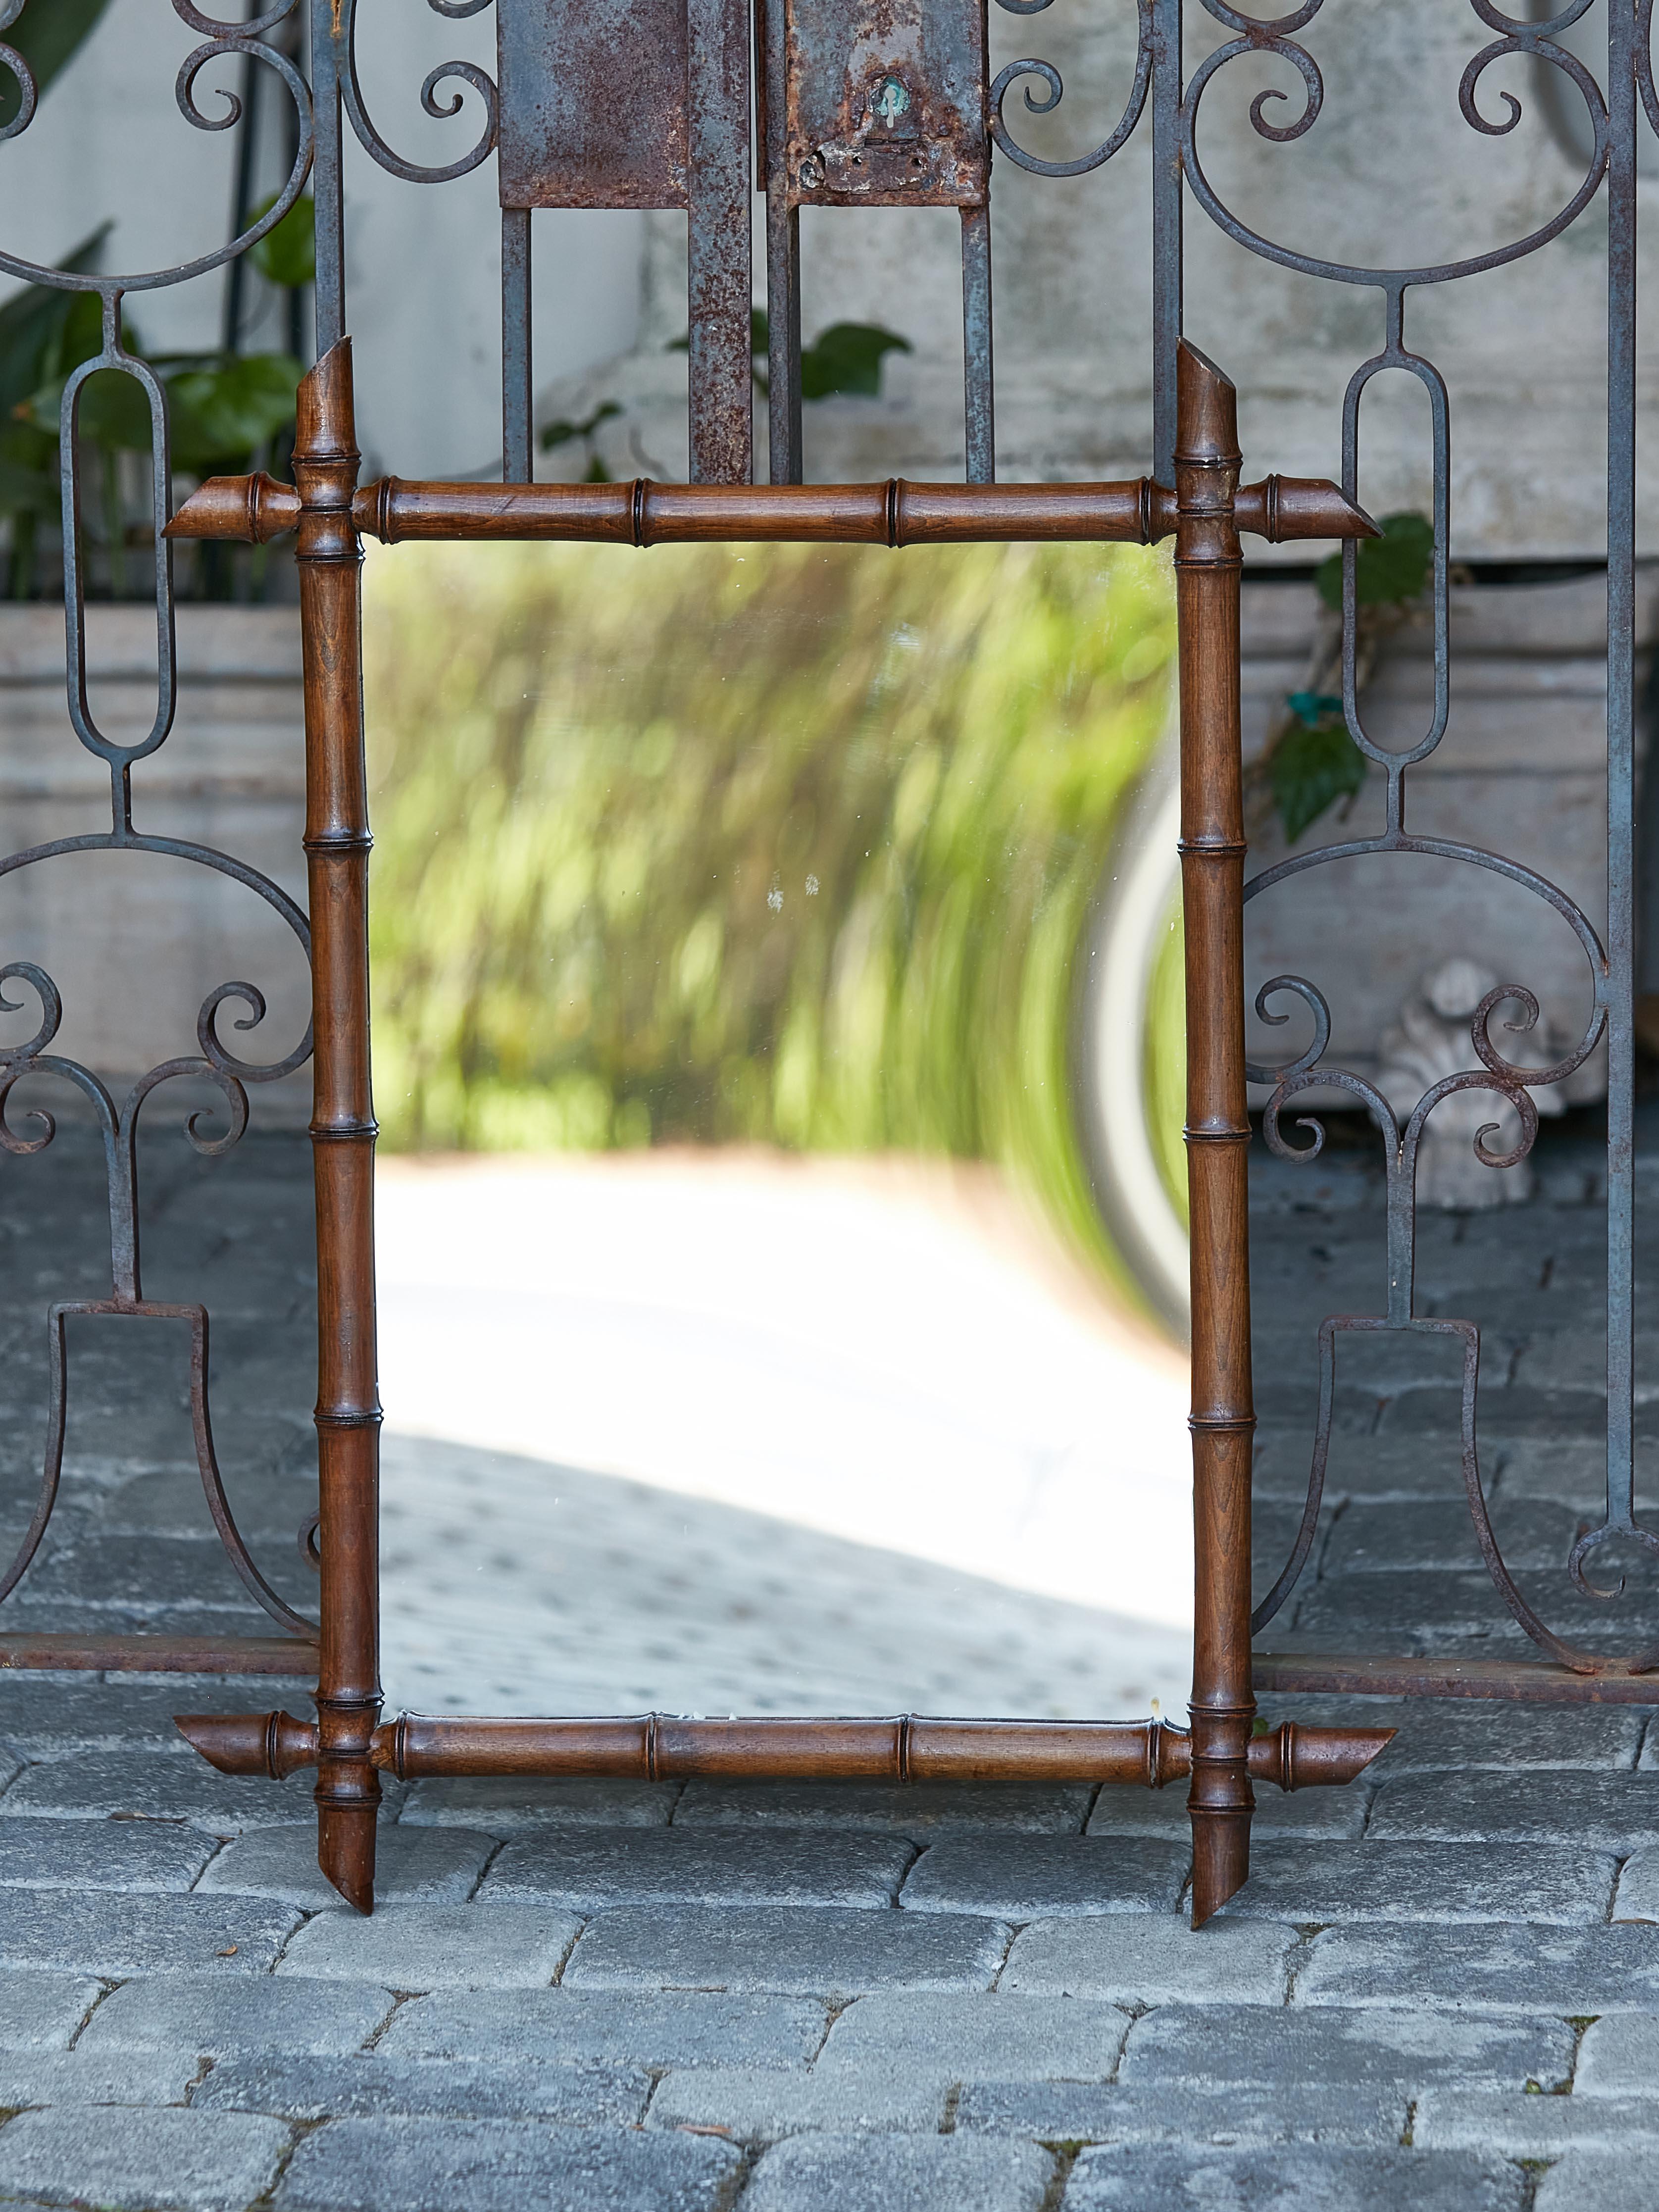 Ein französischer Spiegel aus Bambusimitat aus der Jahrhundertwende um 1900 mit sich kreuzenden Ecken, schrägen Akzenten und dunkelbrauner Patina. Ein französischer Spiegel aus Bambusimitat aus der Jahrhundertwende, der mühelos rustikalen Charme mit